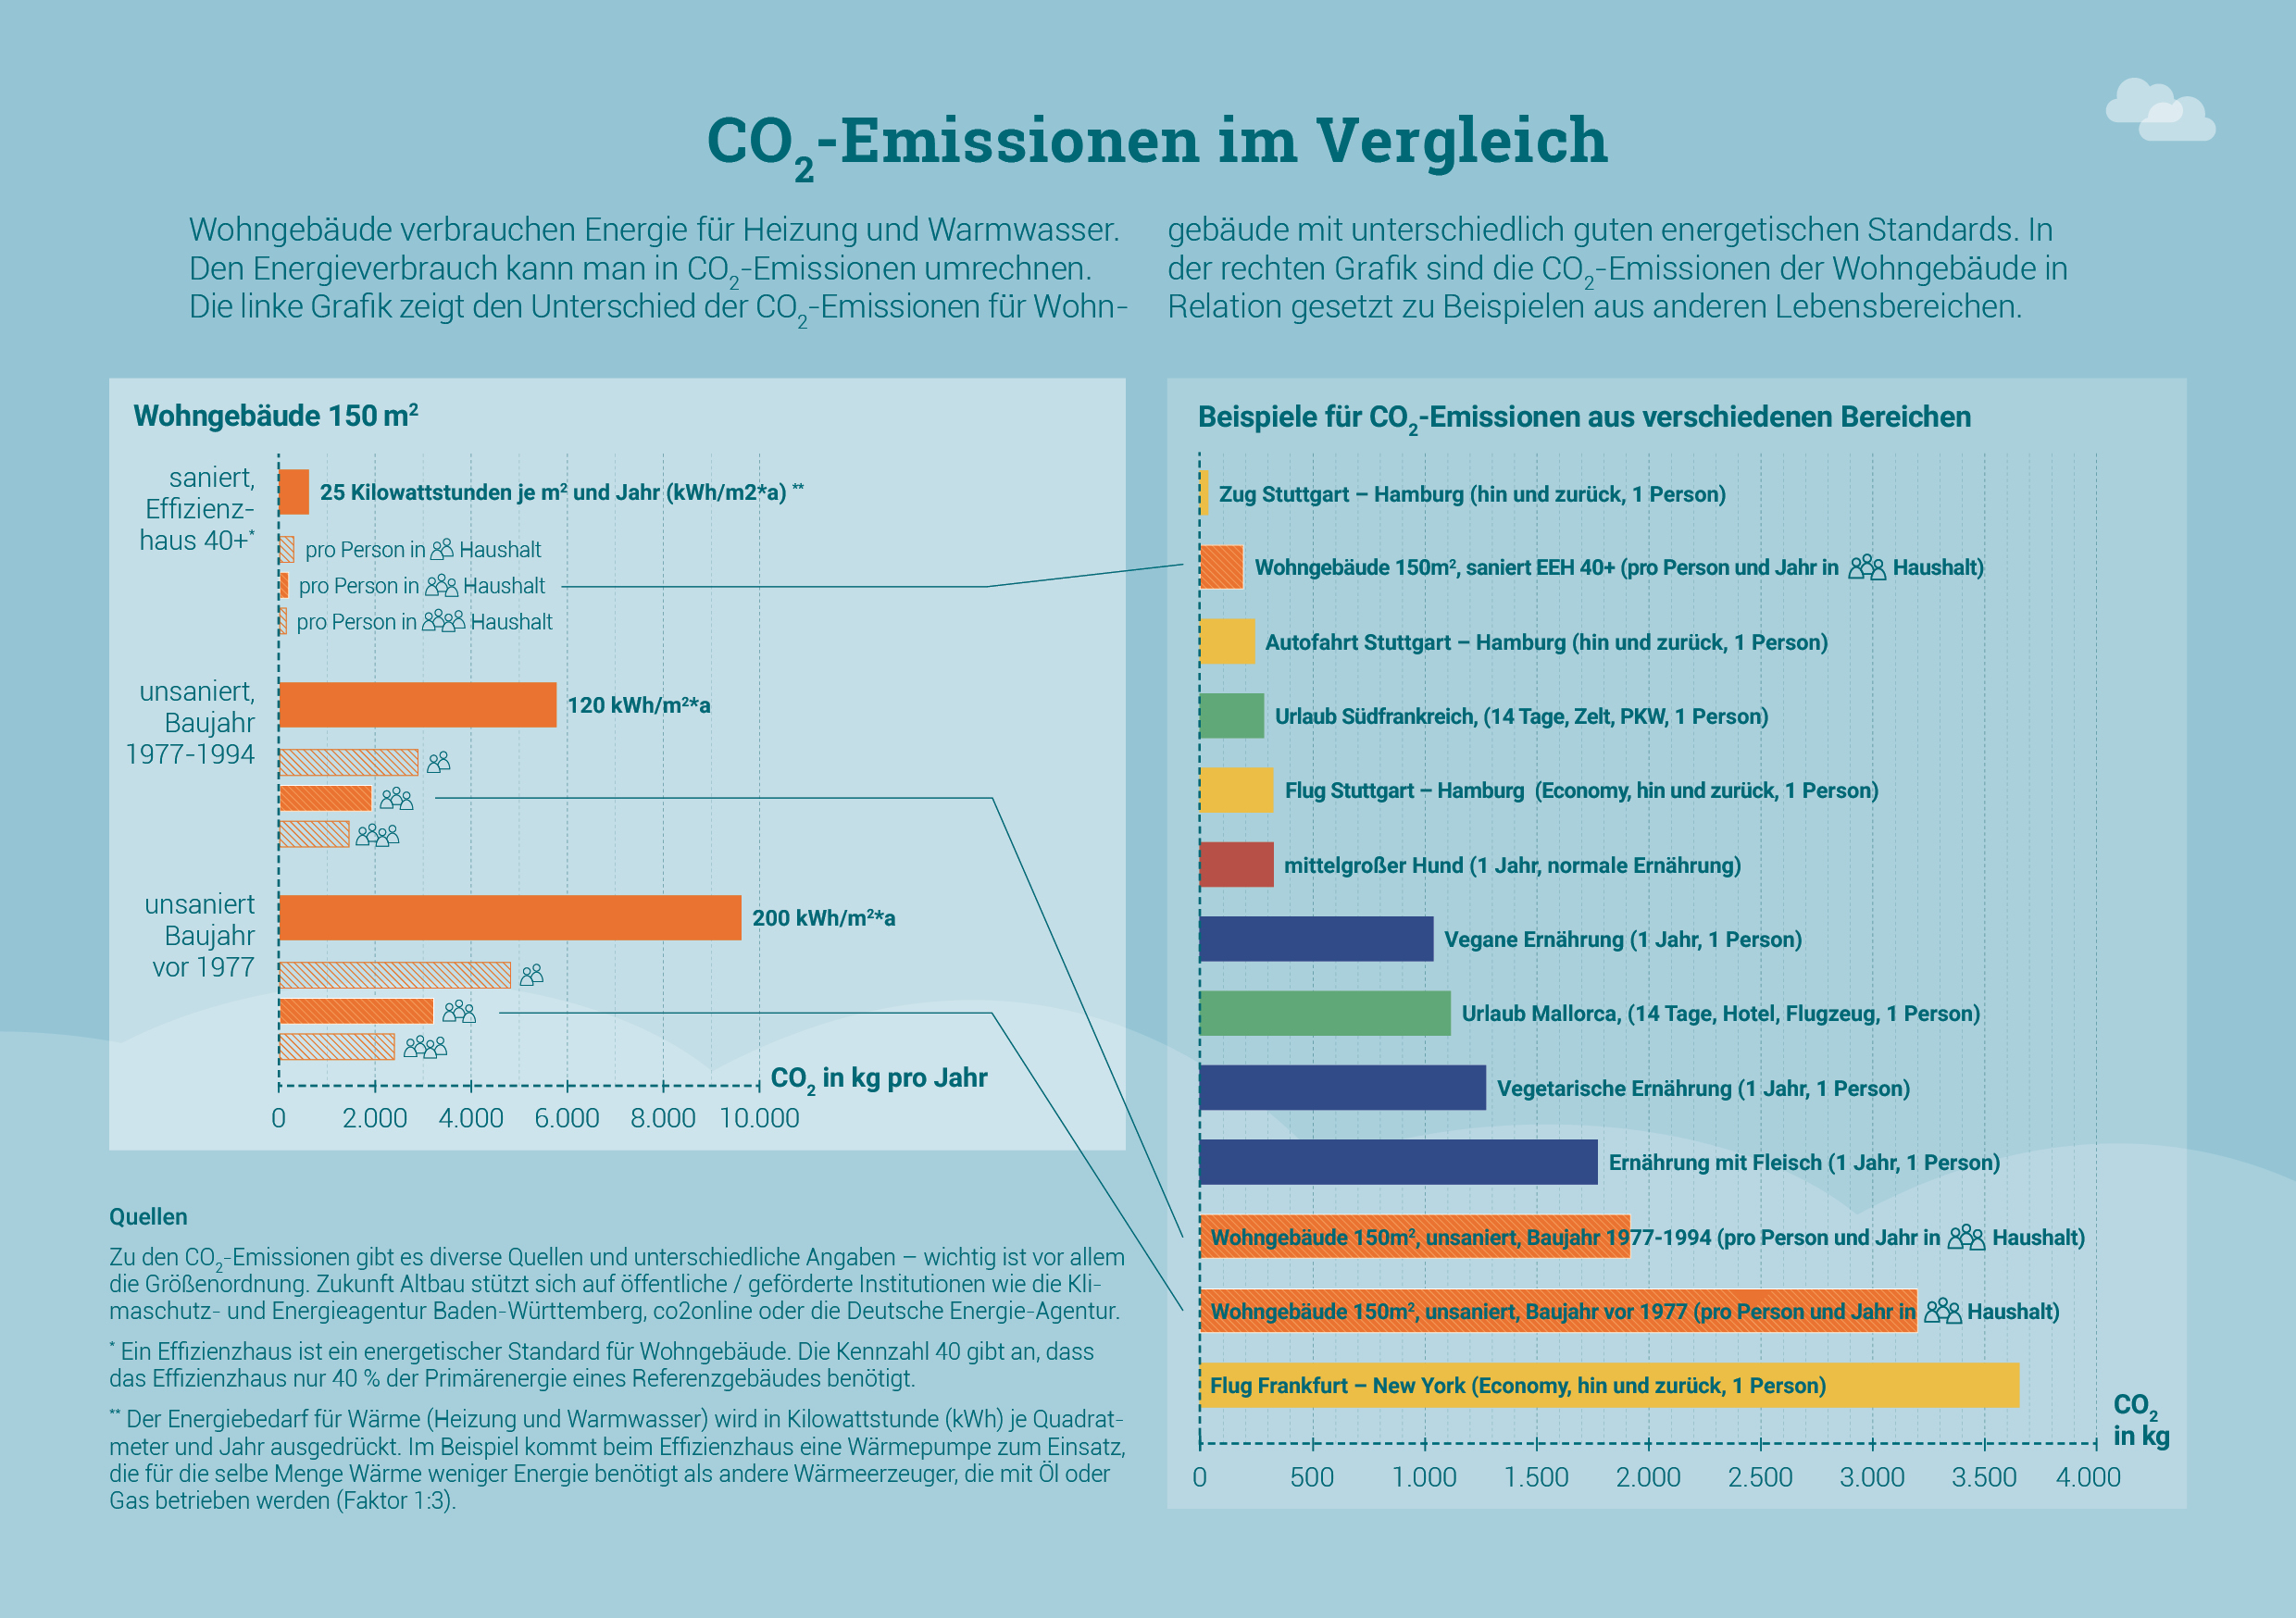 Die Grafik zeigt CO2-Emissionen im Vergleich - für verschiedene Sanierungsstandards ebenso wie verschiedene alltägliche Aktivitäten wie Reisen.